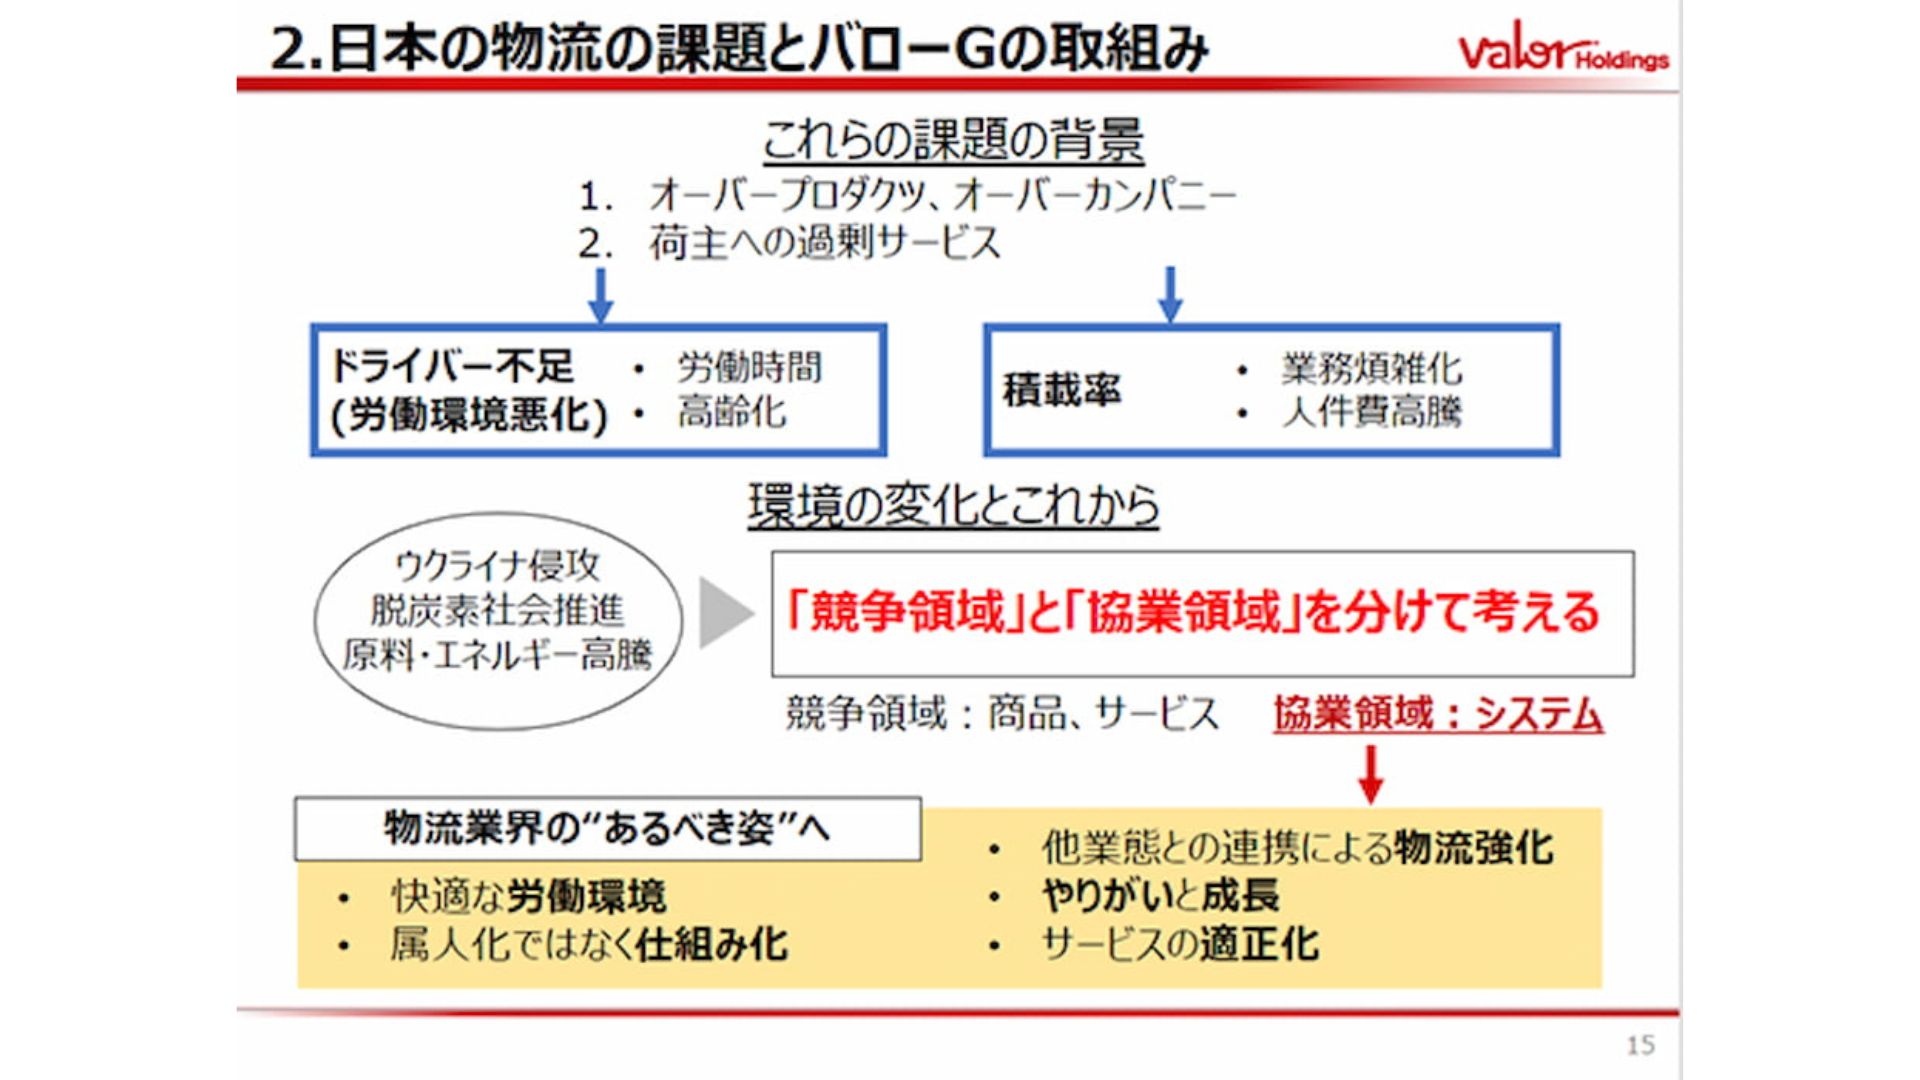 小池氏の講演資料における「日本の物流の課題とバローGの取り組み」抜粋